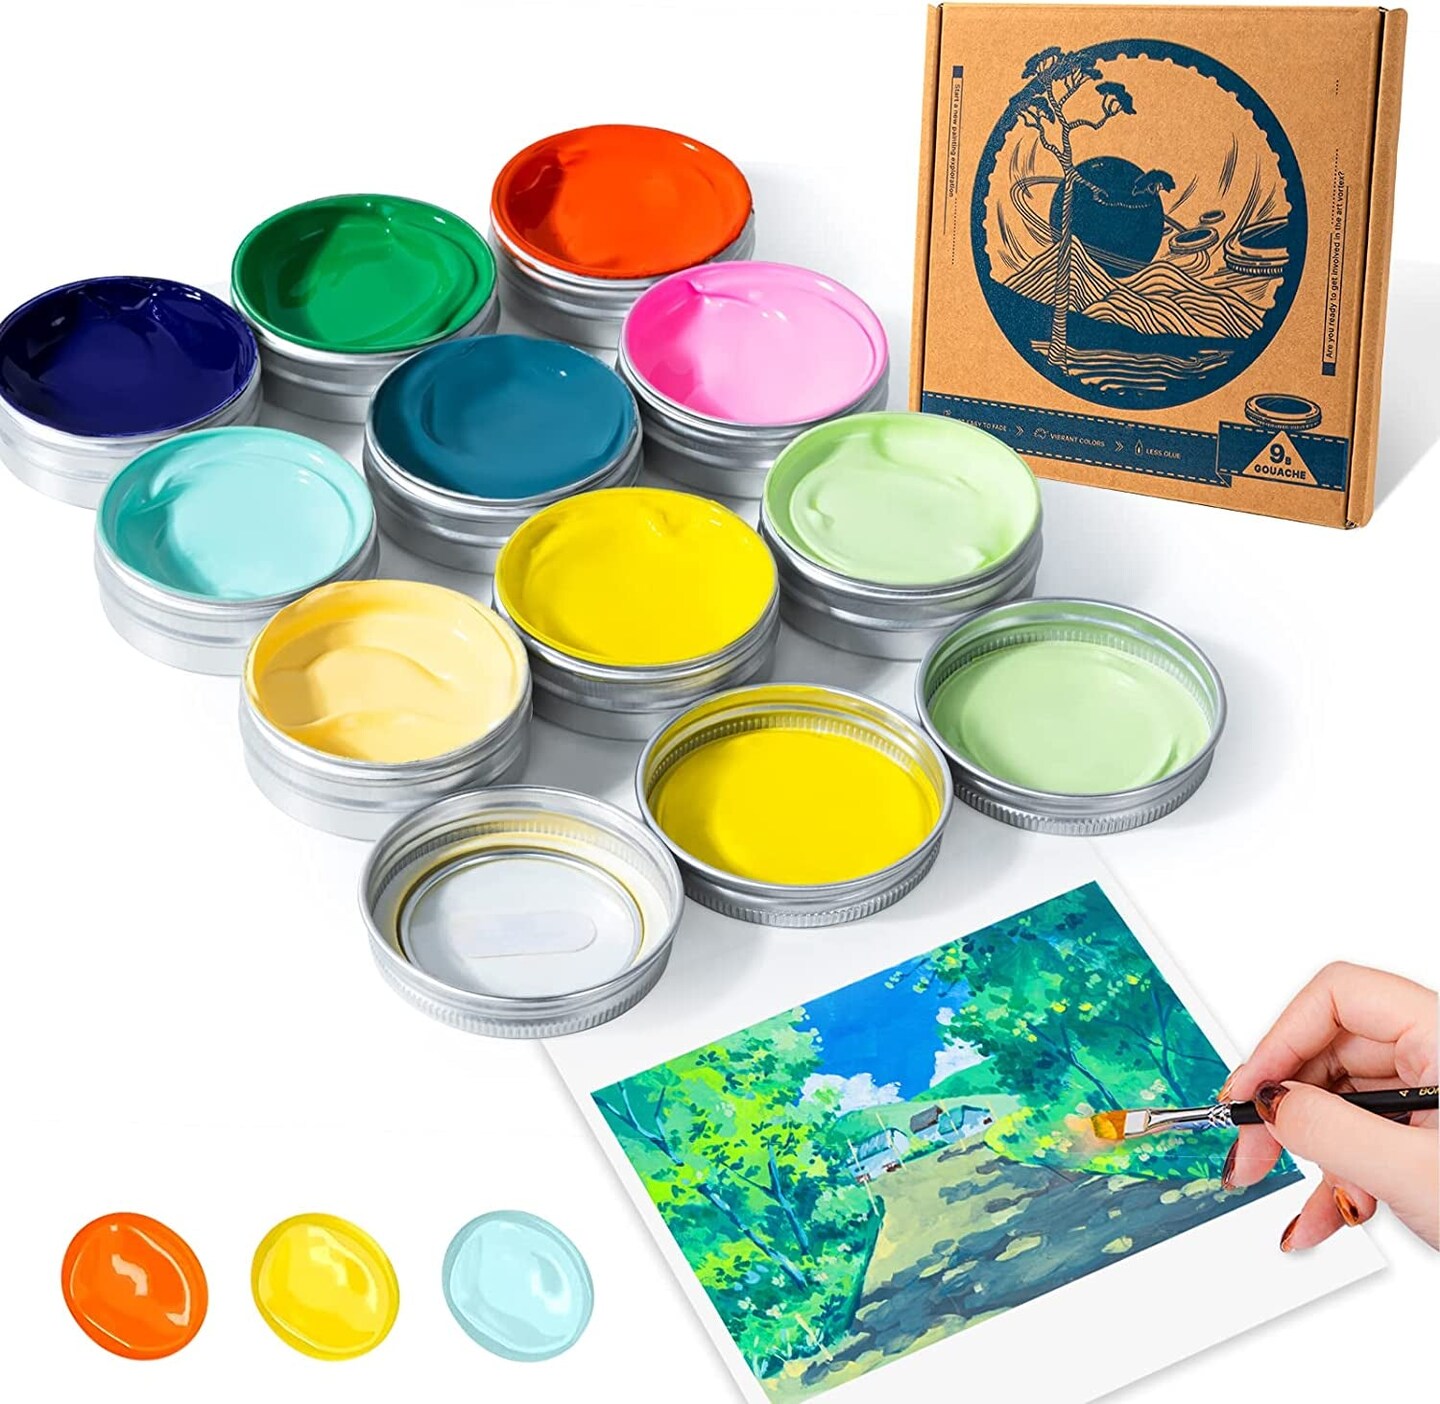 Gouache Paint Set, 35ml/1.18oz x 9 Muted Colors Arrtx Creamy